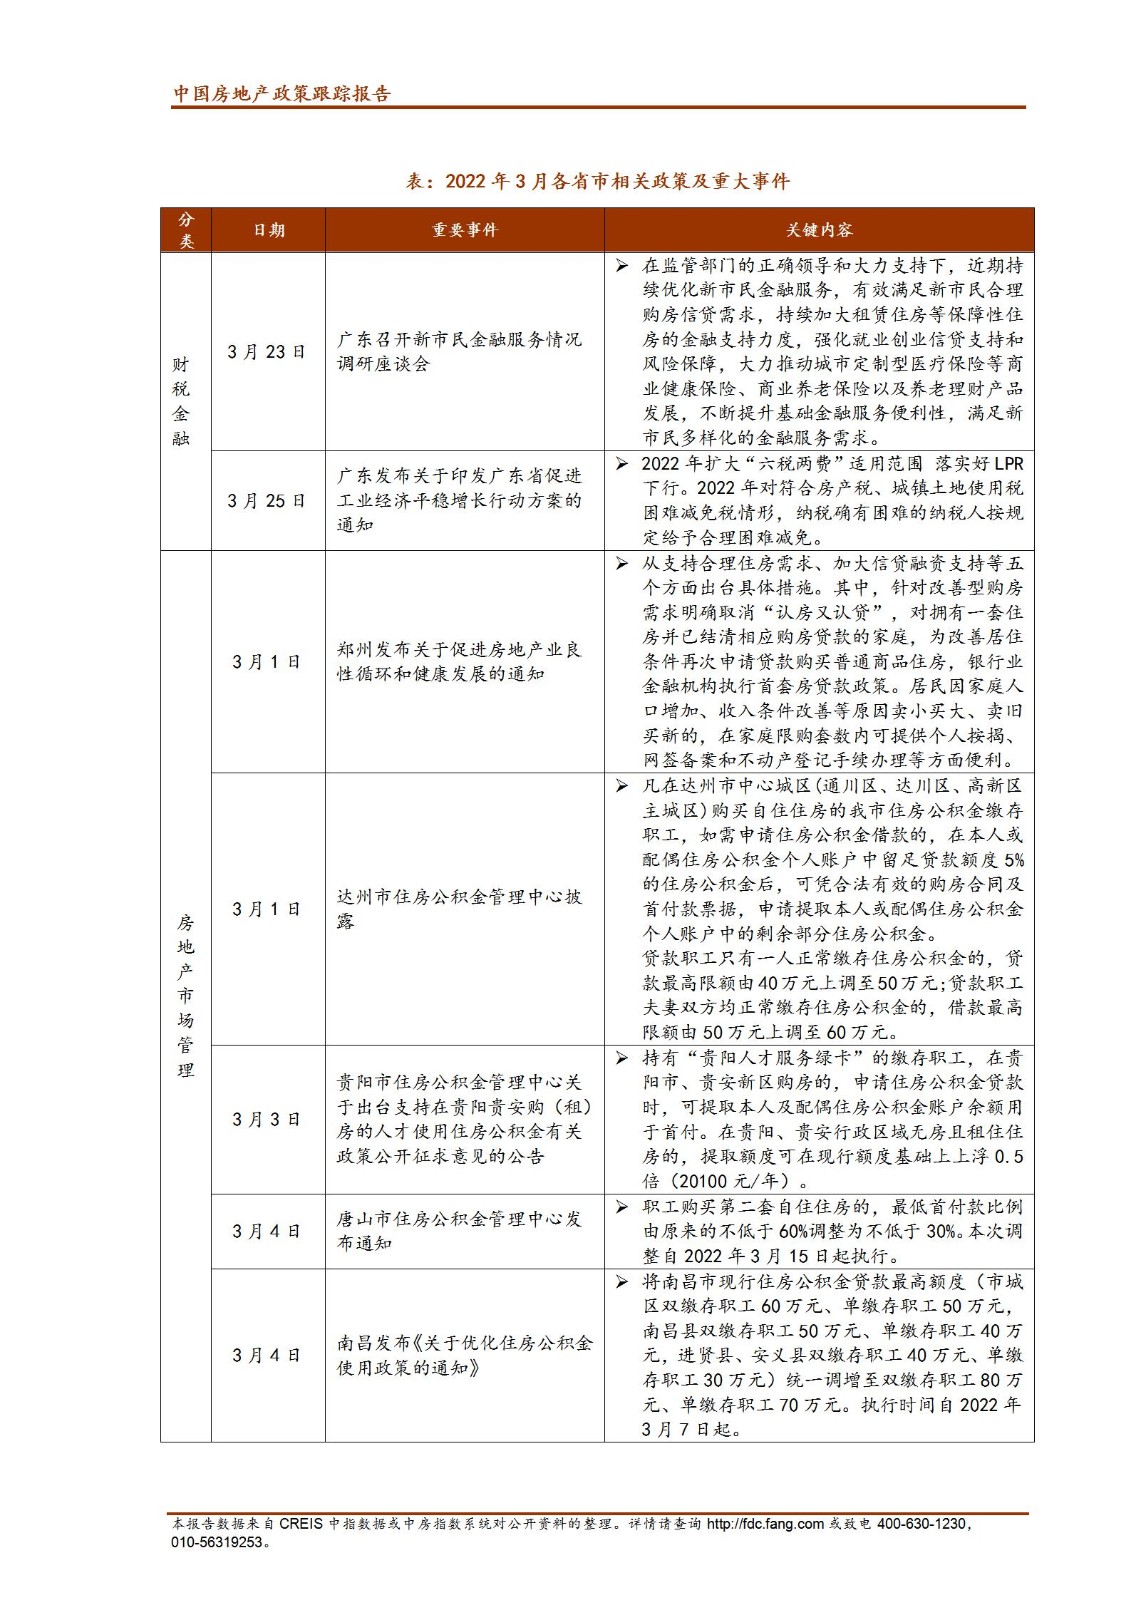 《中指丨中国房地产政策跟踪报告（2022年3月）》_04.jpg